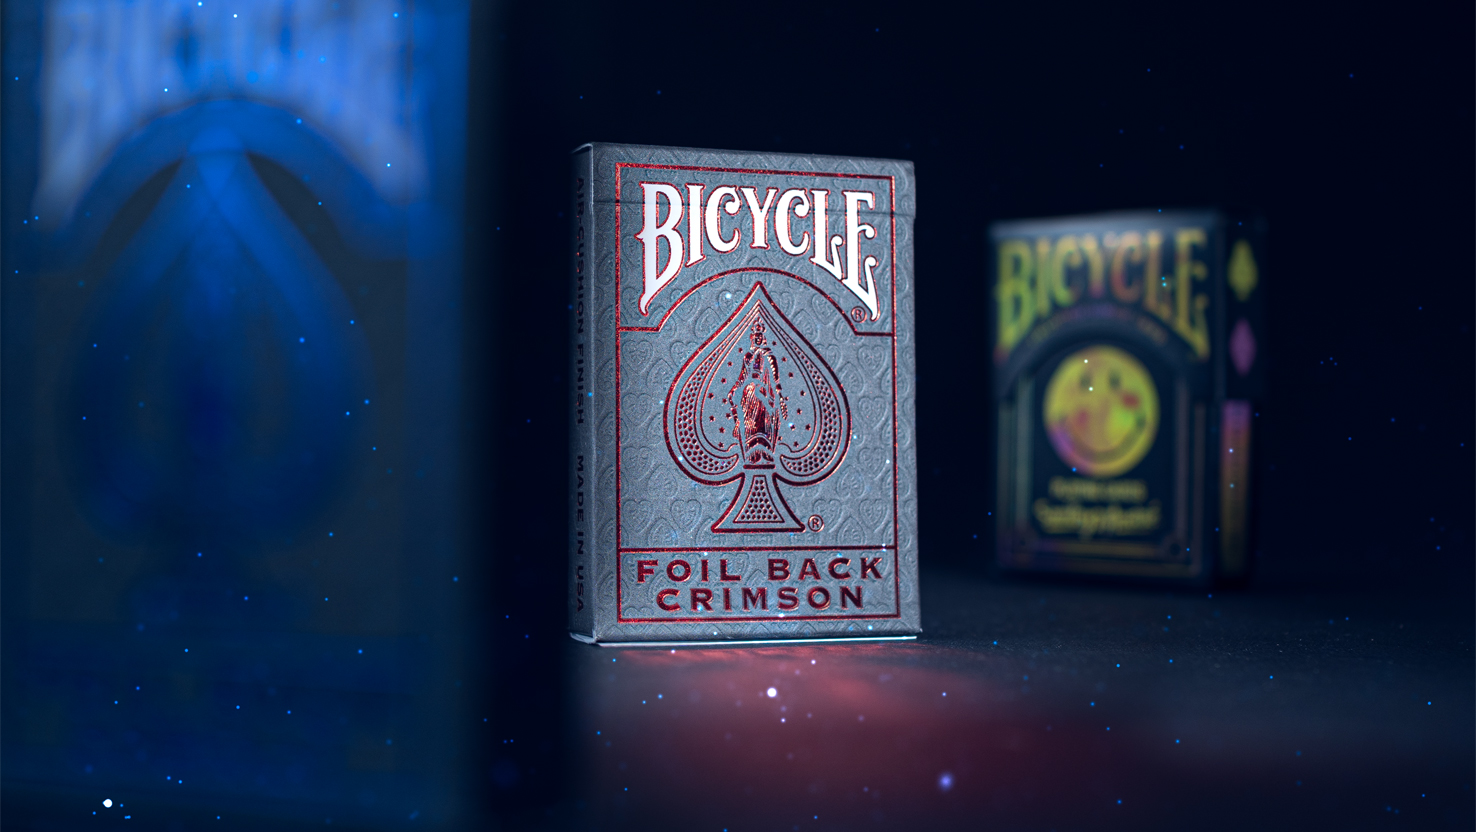 Die Bicycle Ultimate Foil Back Crimson Red und das Bicycle André Kartendeck stehen vor einem dunklem und unscharfem Hintergrund.